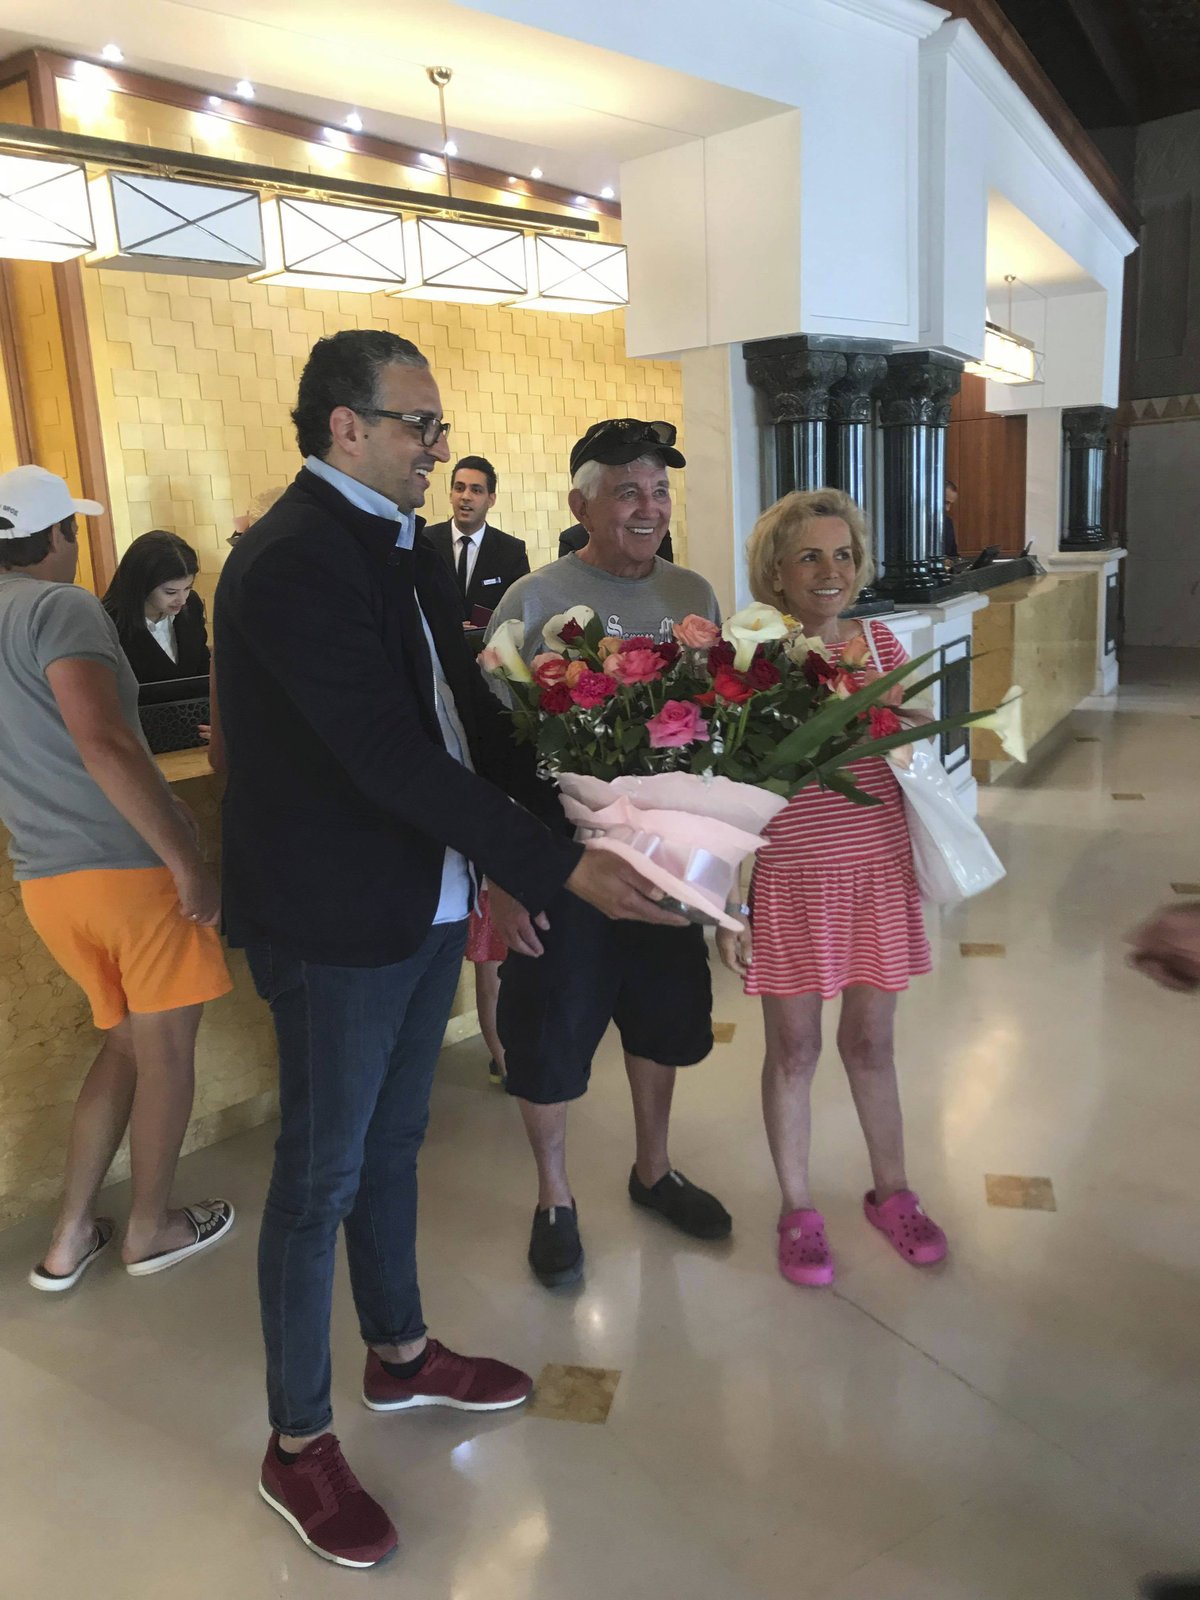 Hanu Krampolovou s úsměvem a květinou přivítal zpátky manažer hotelu.